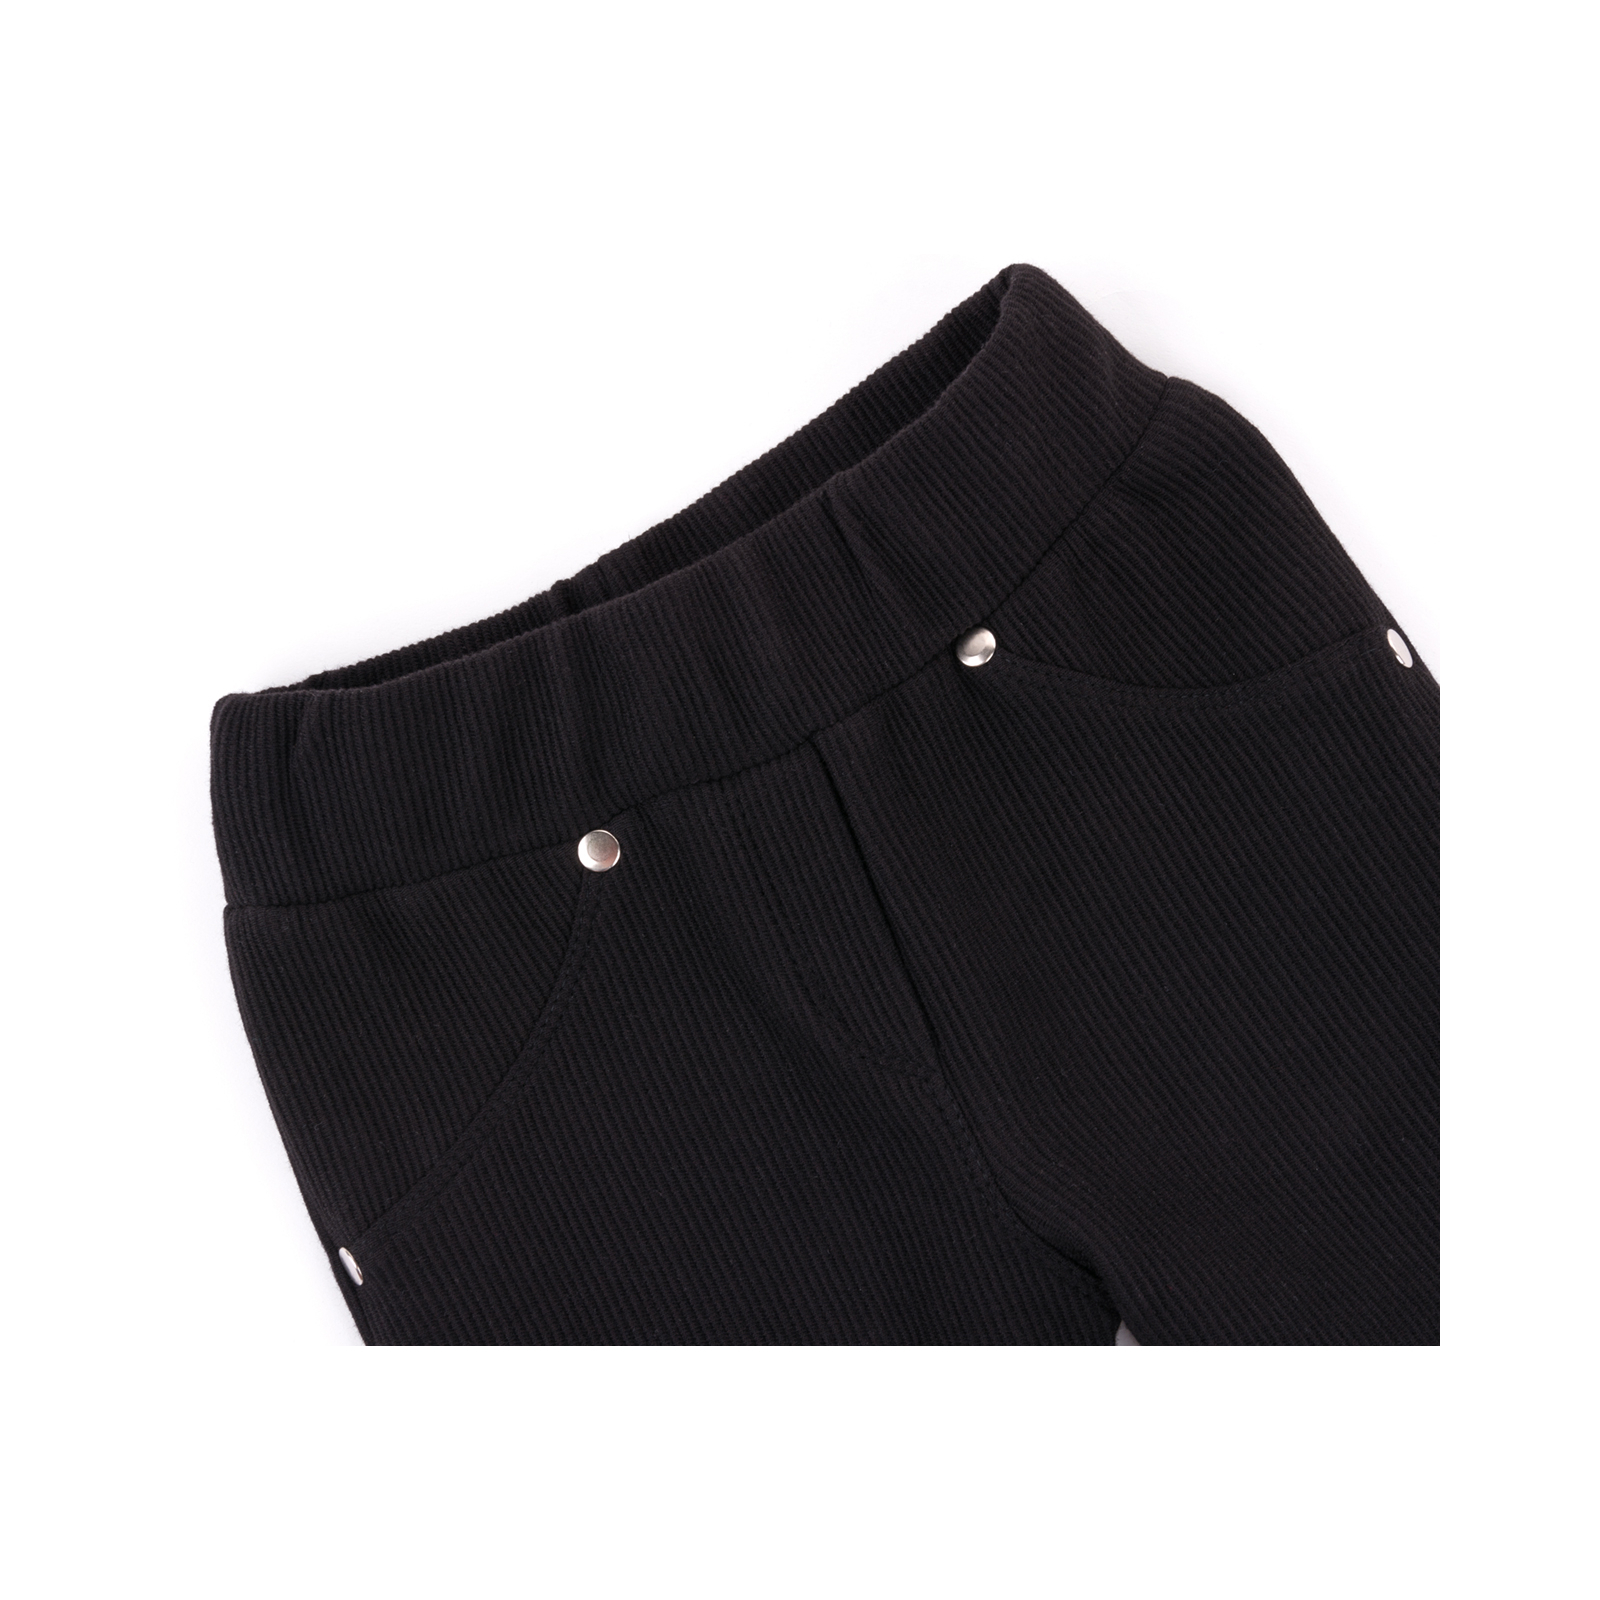 Лосины Breeze в рубчик с карманчиком (9842-122G-black) изображение 3